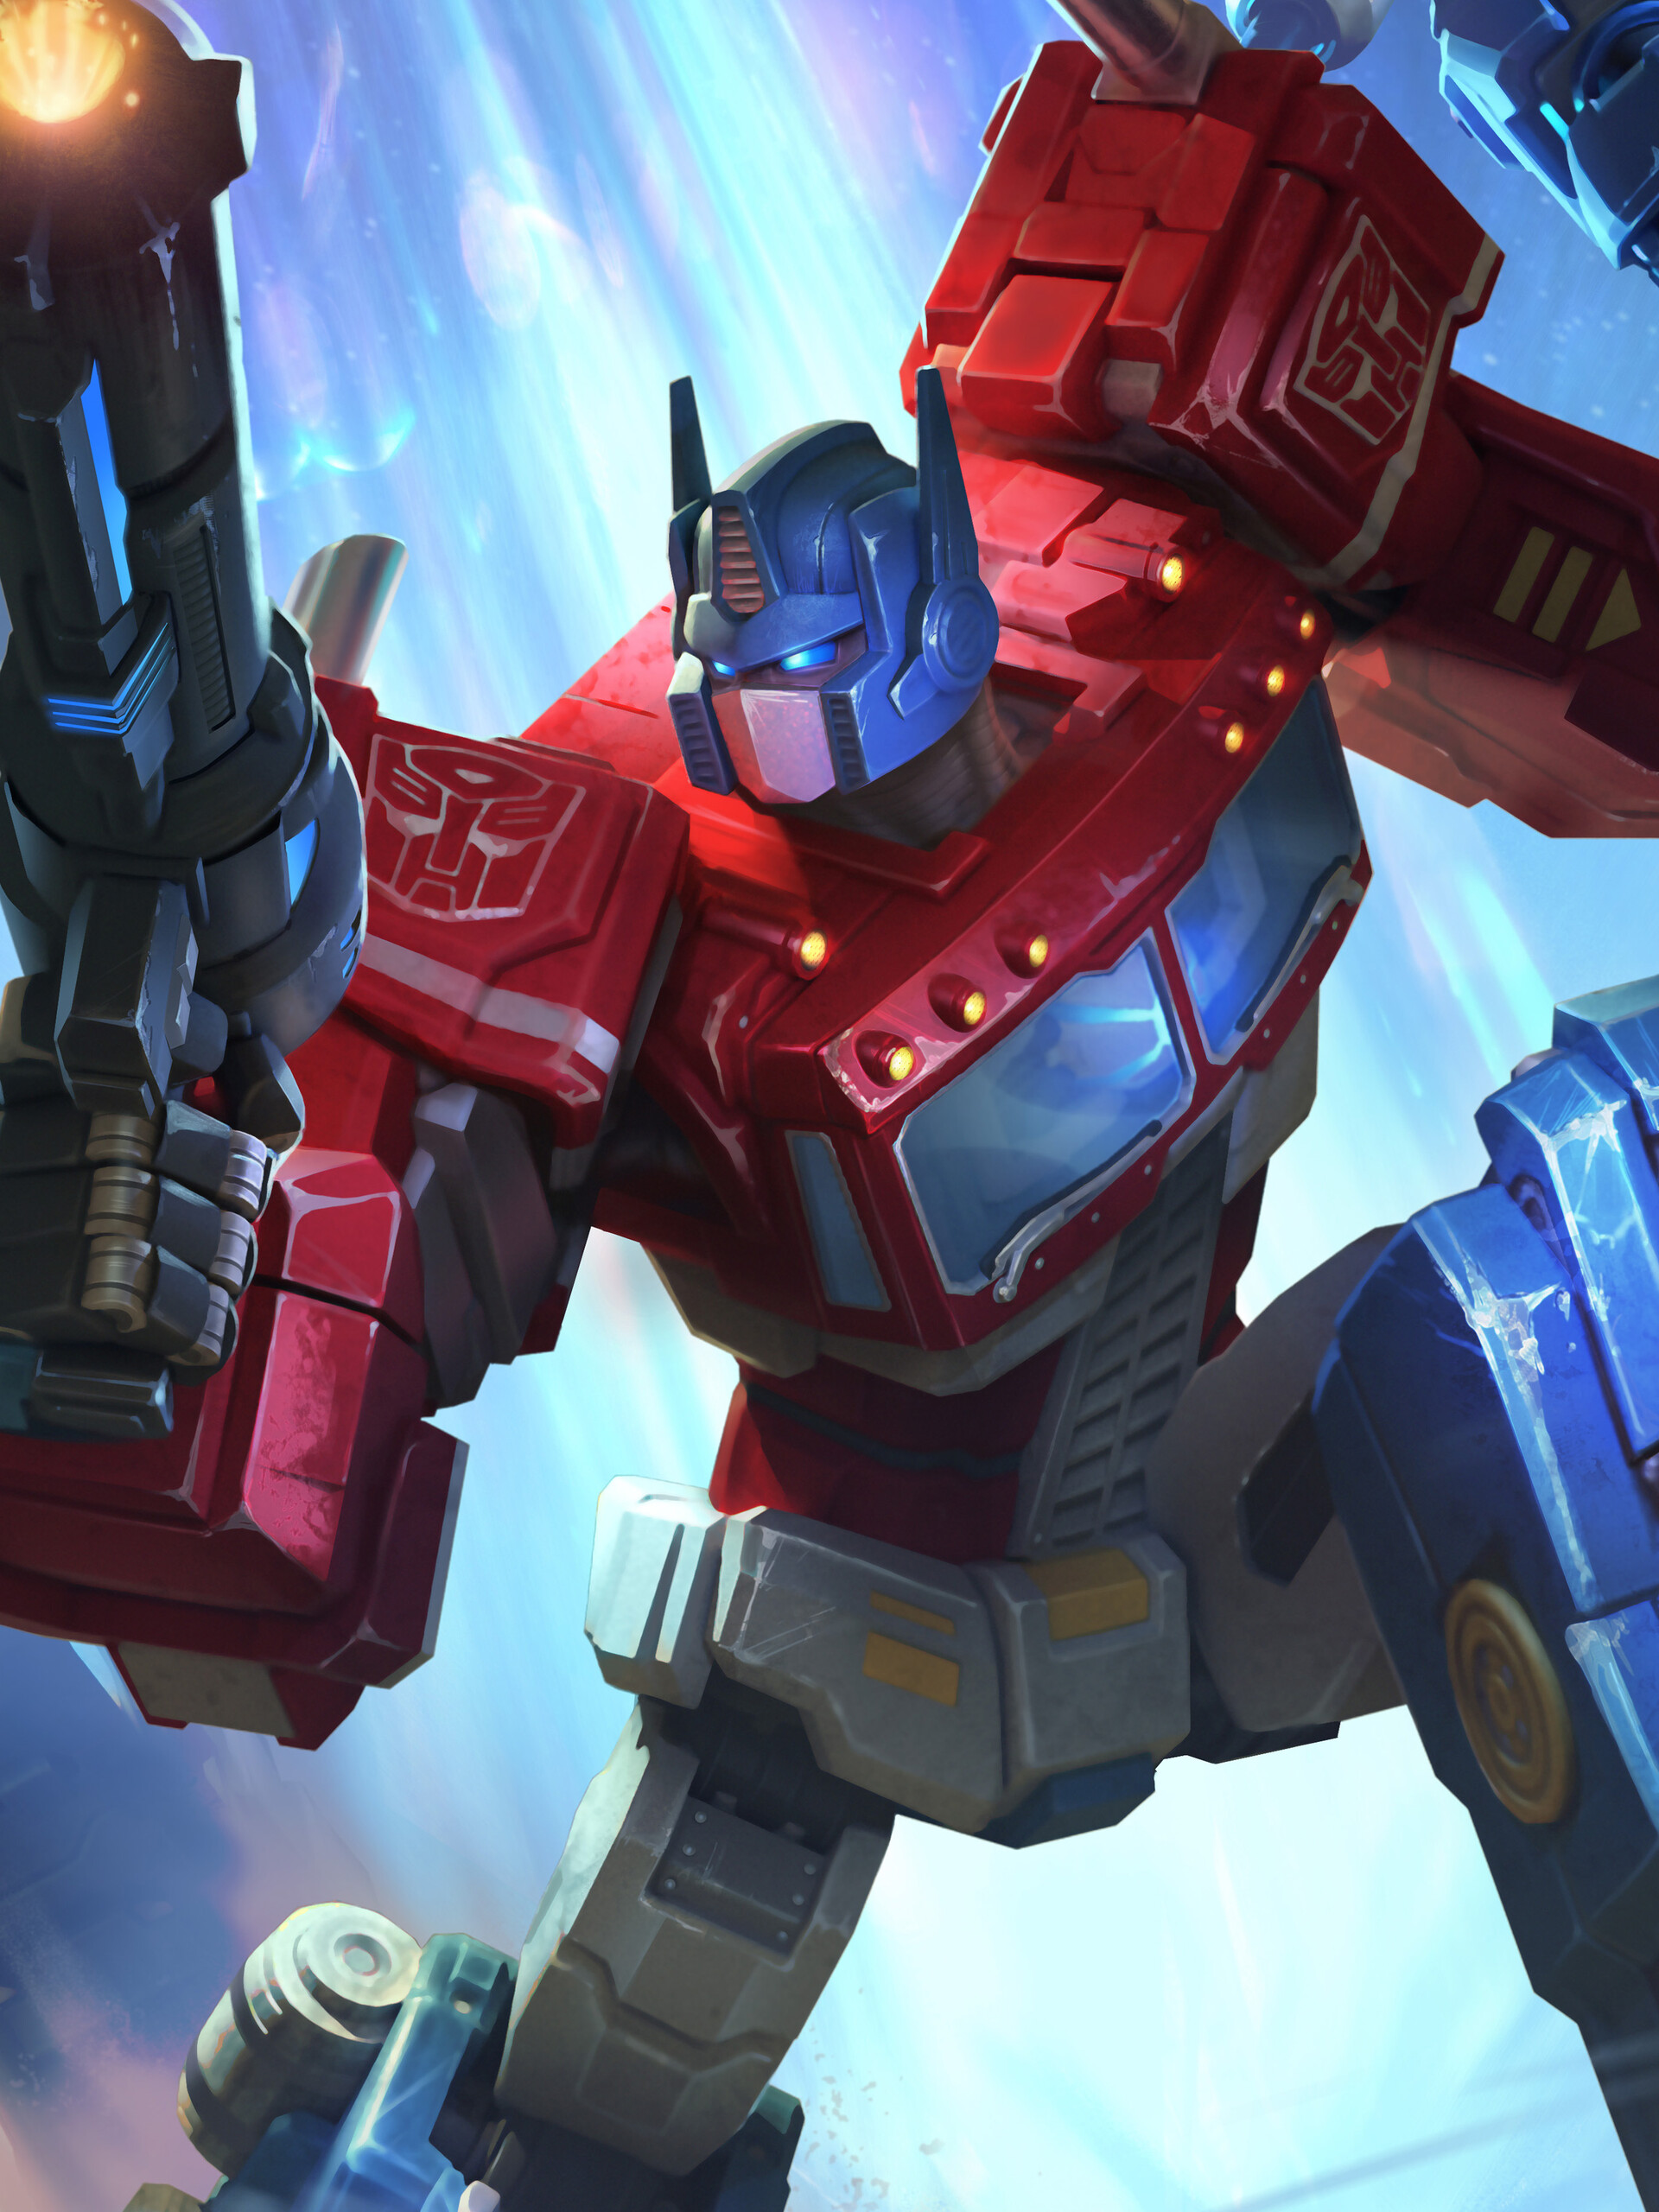 ArtStation - SMITE: Transformers Crossover